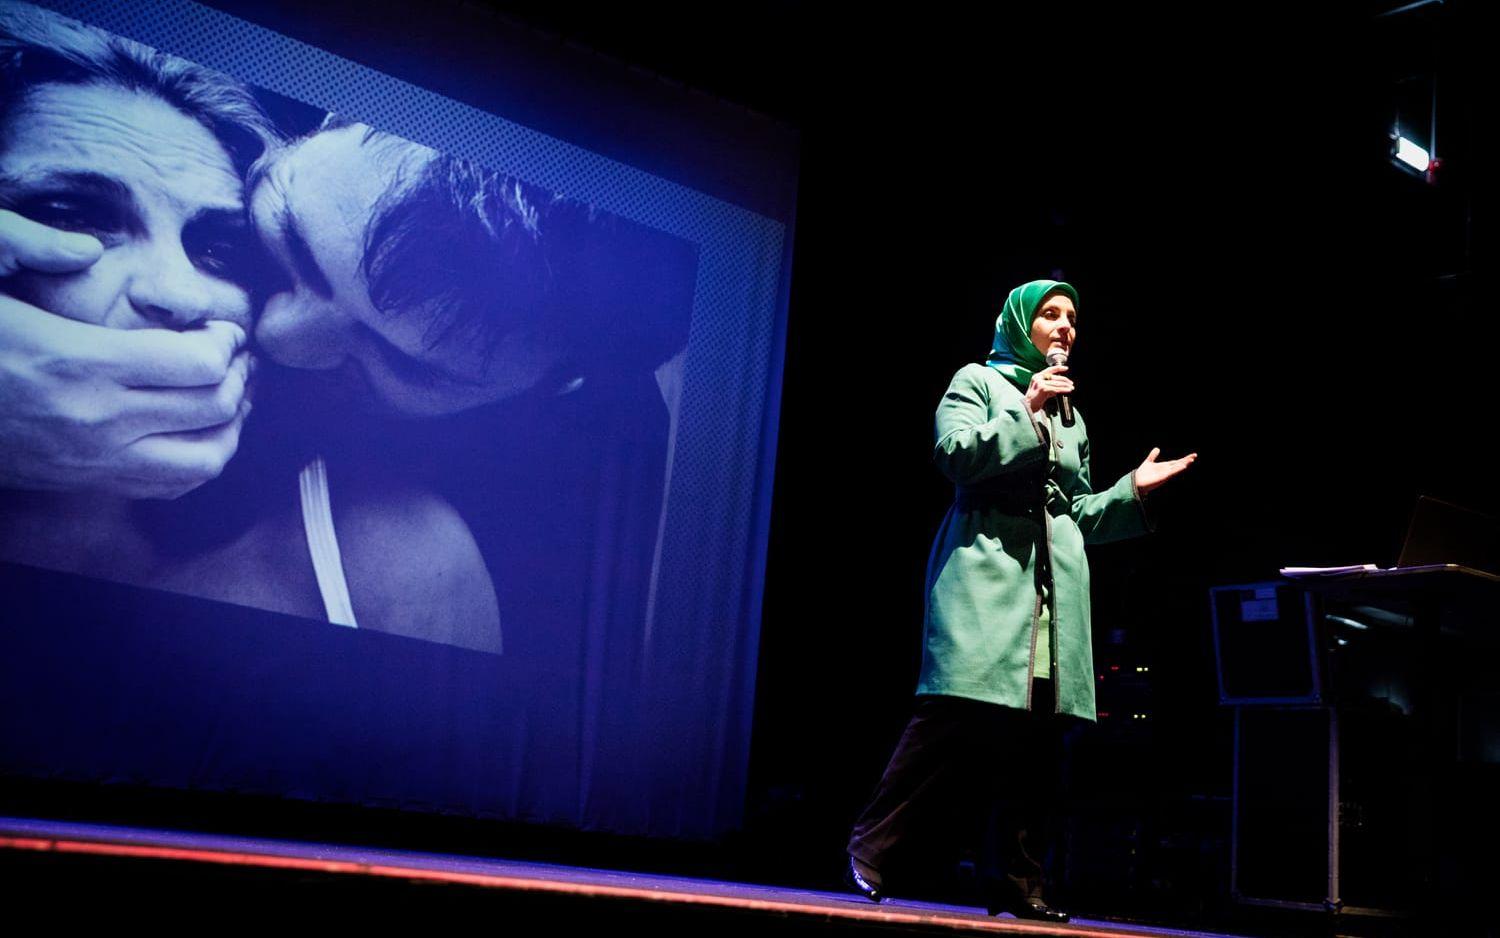 Under en av seminariets programpunkter talade journalisten Nour Malah om könsförtryck, och hur hundratusentals män och kvinnor demonstrerade under den arabiska våren. Bild: Jonas Lindstedt